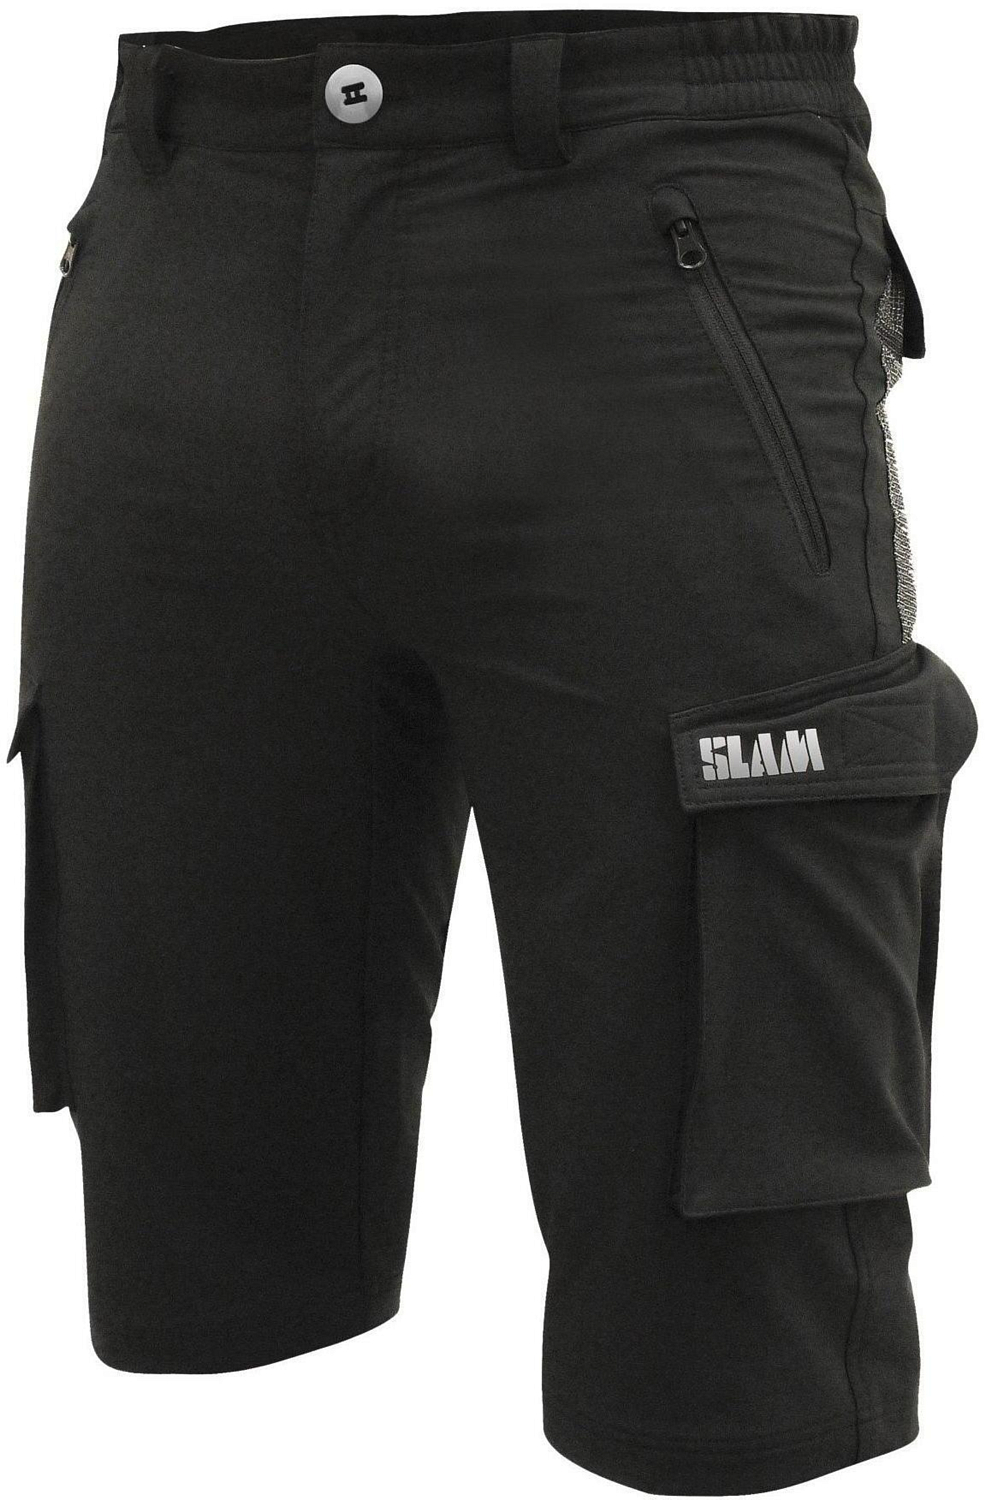 Шорты для парусного спорта SLAM Tech Shorts Black